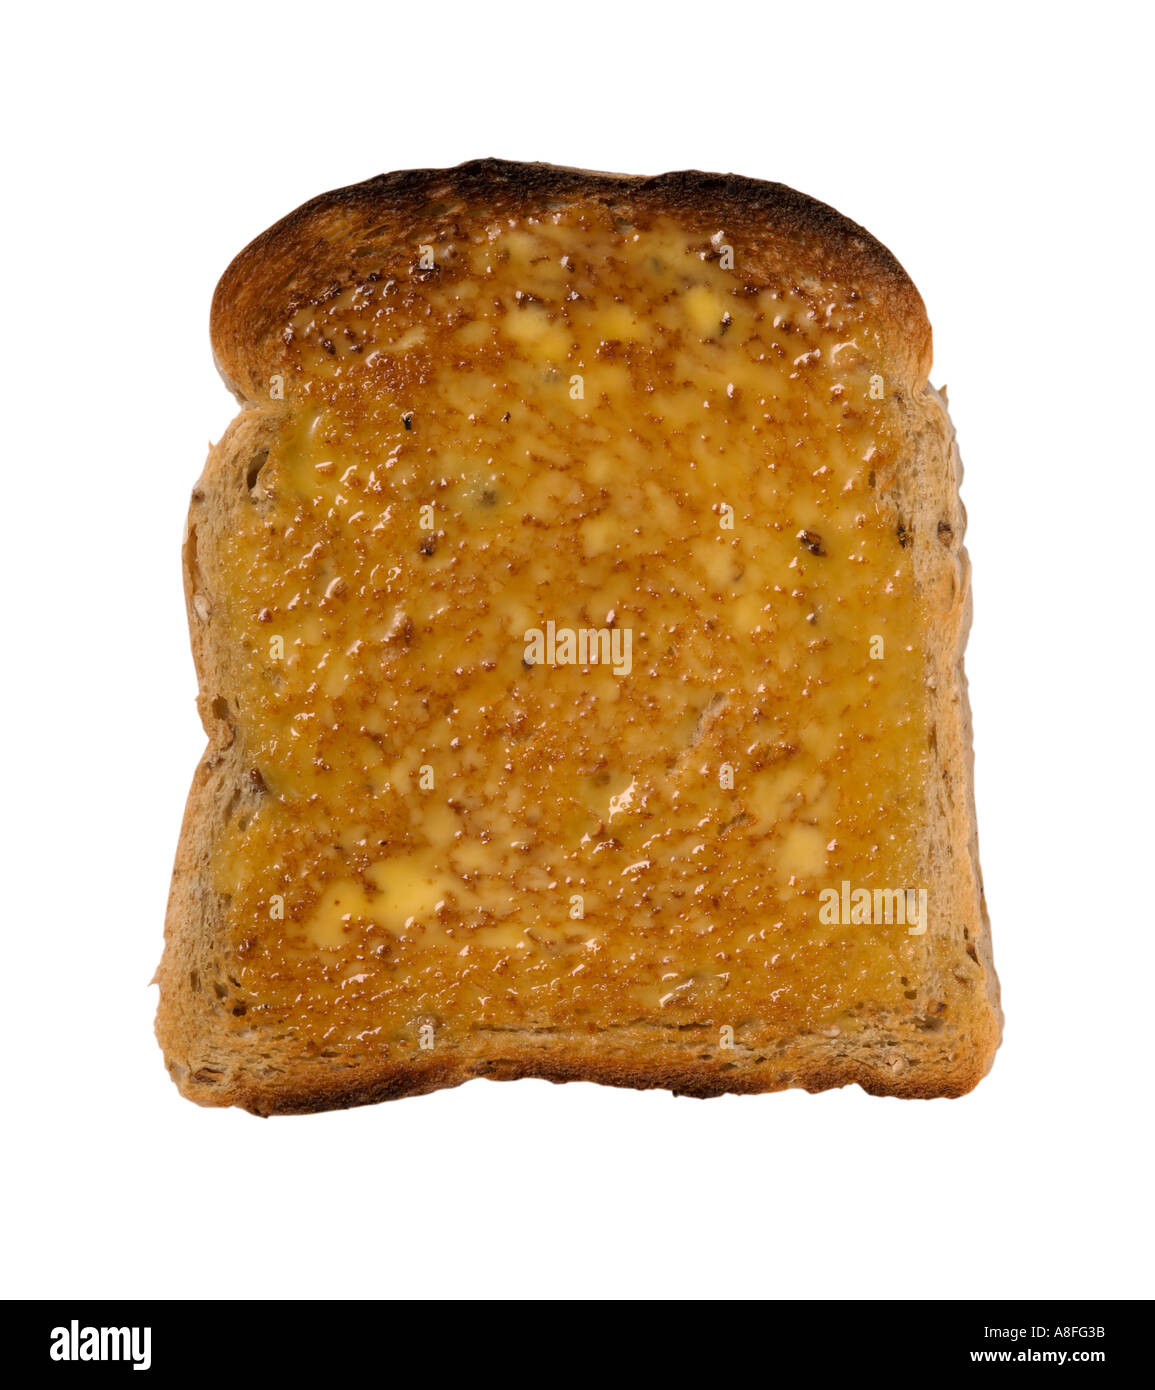 La rebanada de pan tostado untado con mantequilla Foto de stock